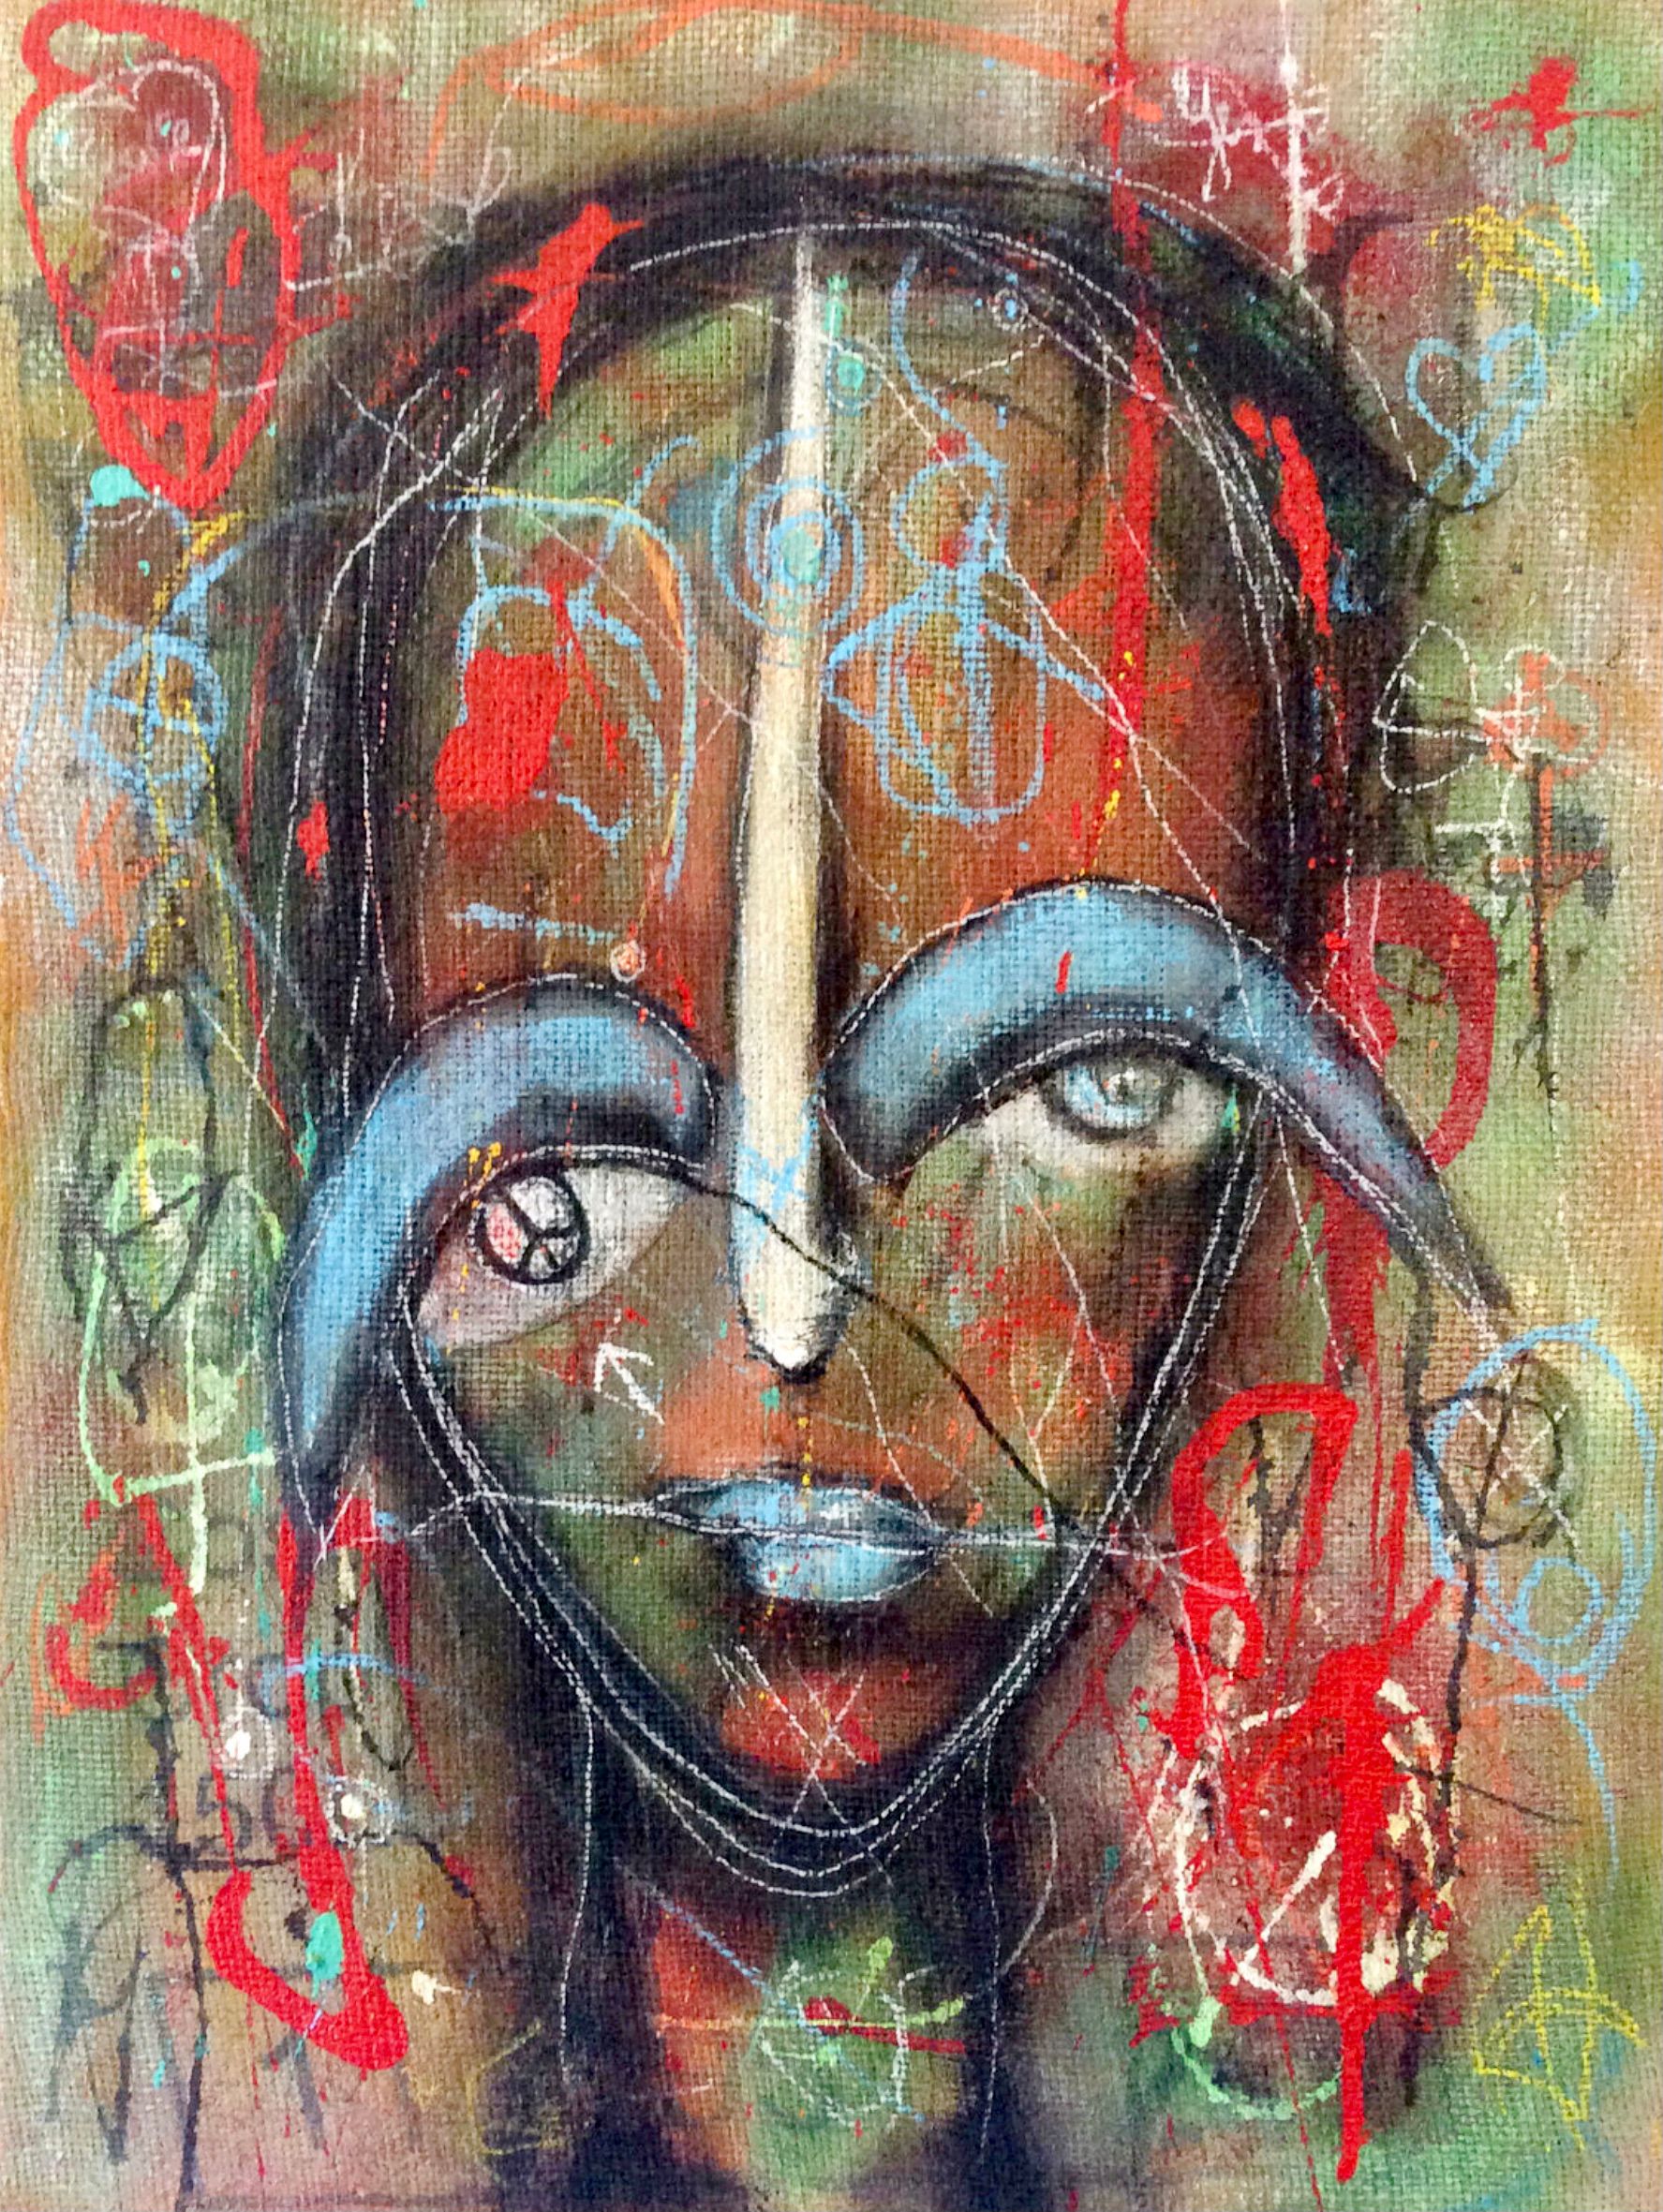 Le portrait expressif semi-abstrait "Looking for peace" d'Ilona Schmidt représente le visage d'une femme. Les couleurs rouge, orange, turquoise, vert et bleu dominent dans ce tableau.